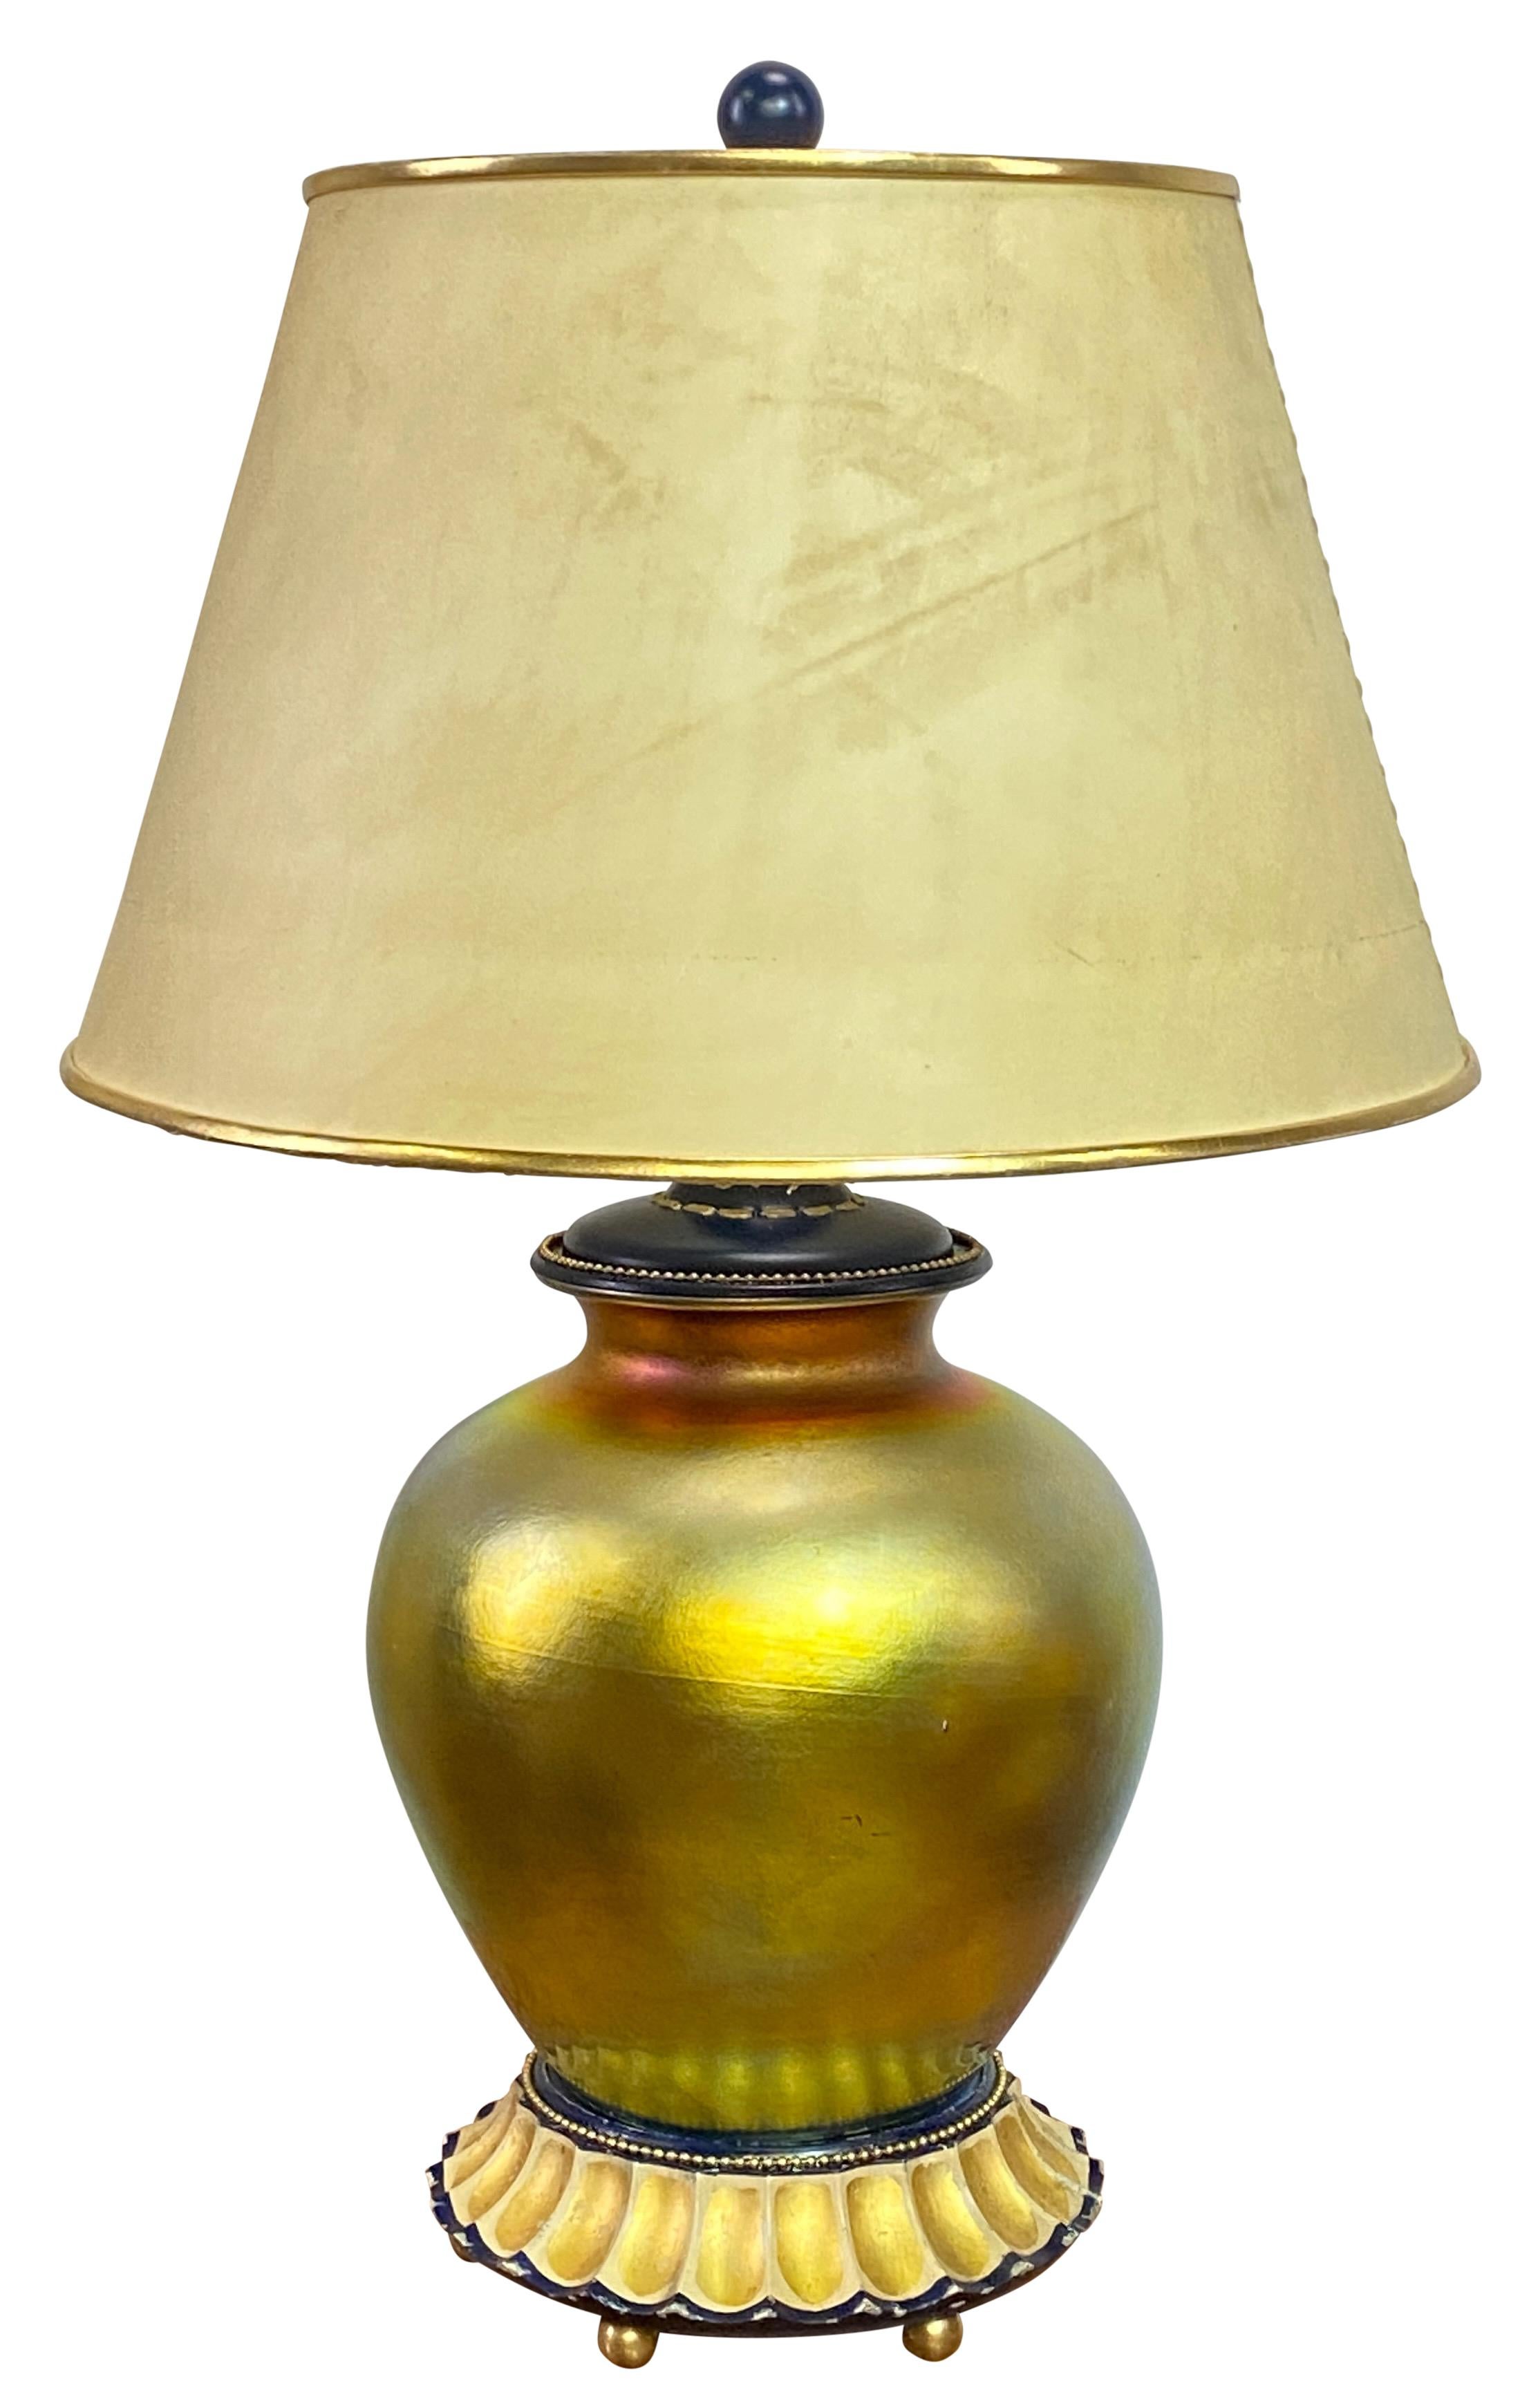 Probablement une auréole en or de Steuben du début du 20e siècle, unique en son genre
Vase en verre d'art irisé avec signature et ayant des restes de l'étiquette d'origine. 
Sur un socle en bois peint et doré.
Récemment restauré et recâblé.
Les